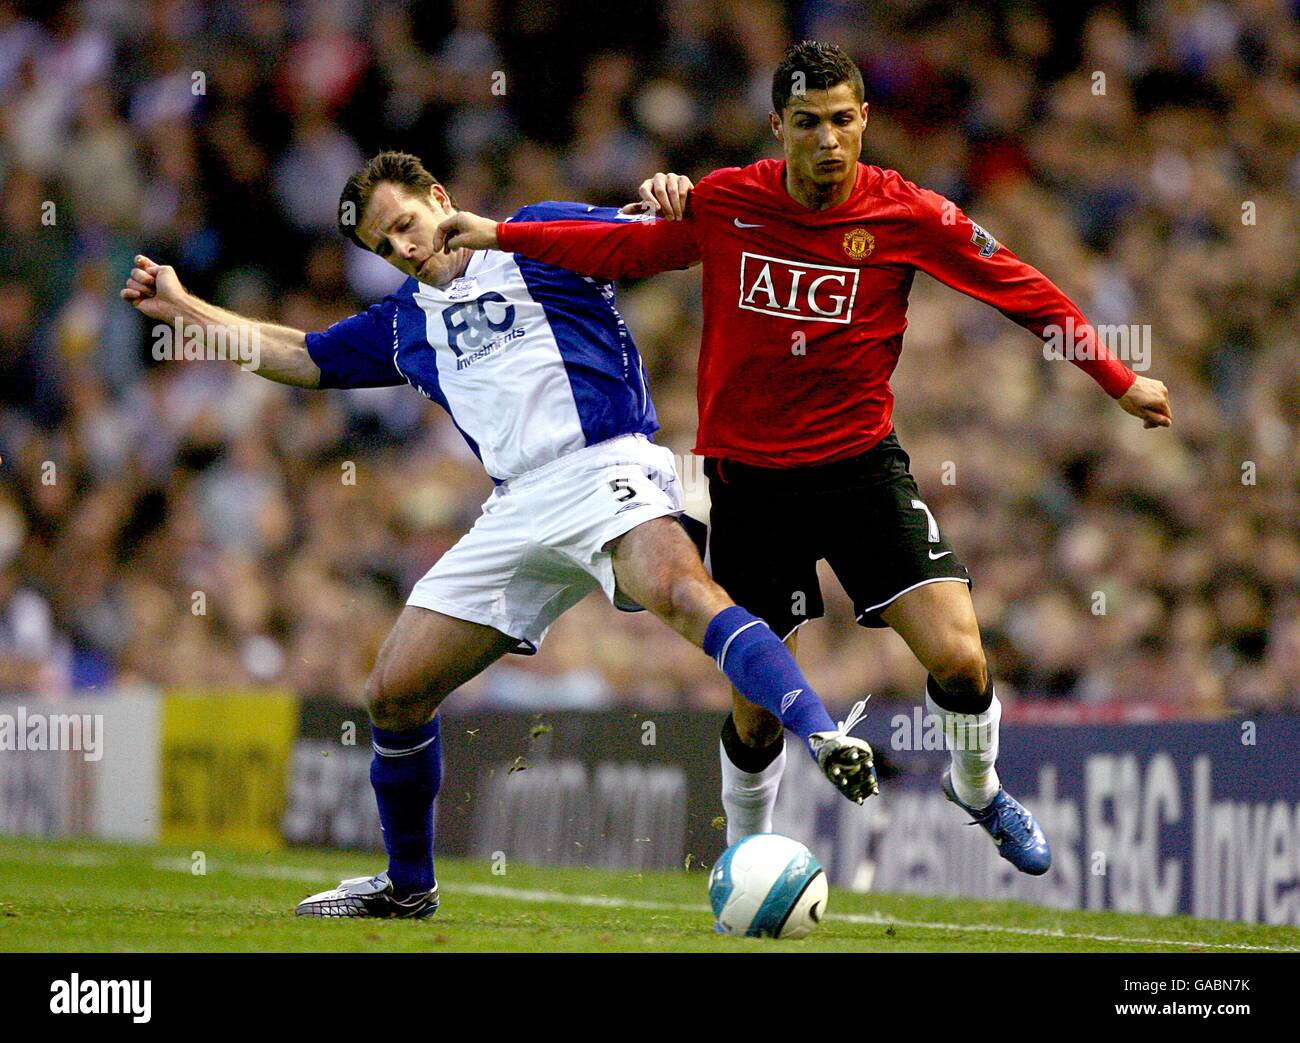 Calcio - Barclays Premier League - Birmingham City / Manchester United - St Andrews. Cristiano Ronaldo del Manchester United e Rafael Schmitz di Birmingham (a sinistra) lottano per la palla Foto Stock